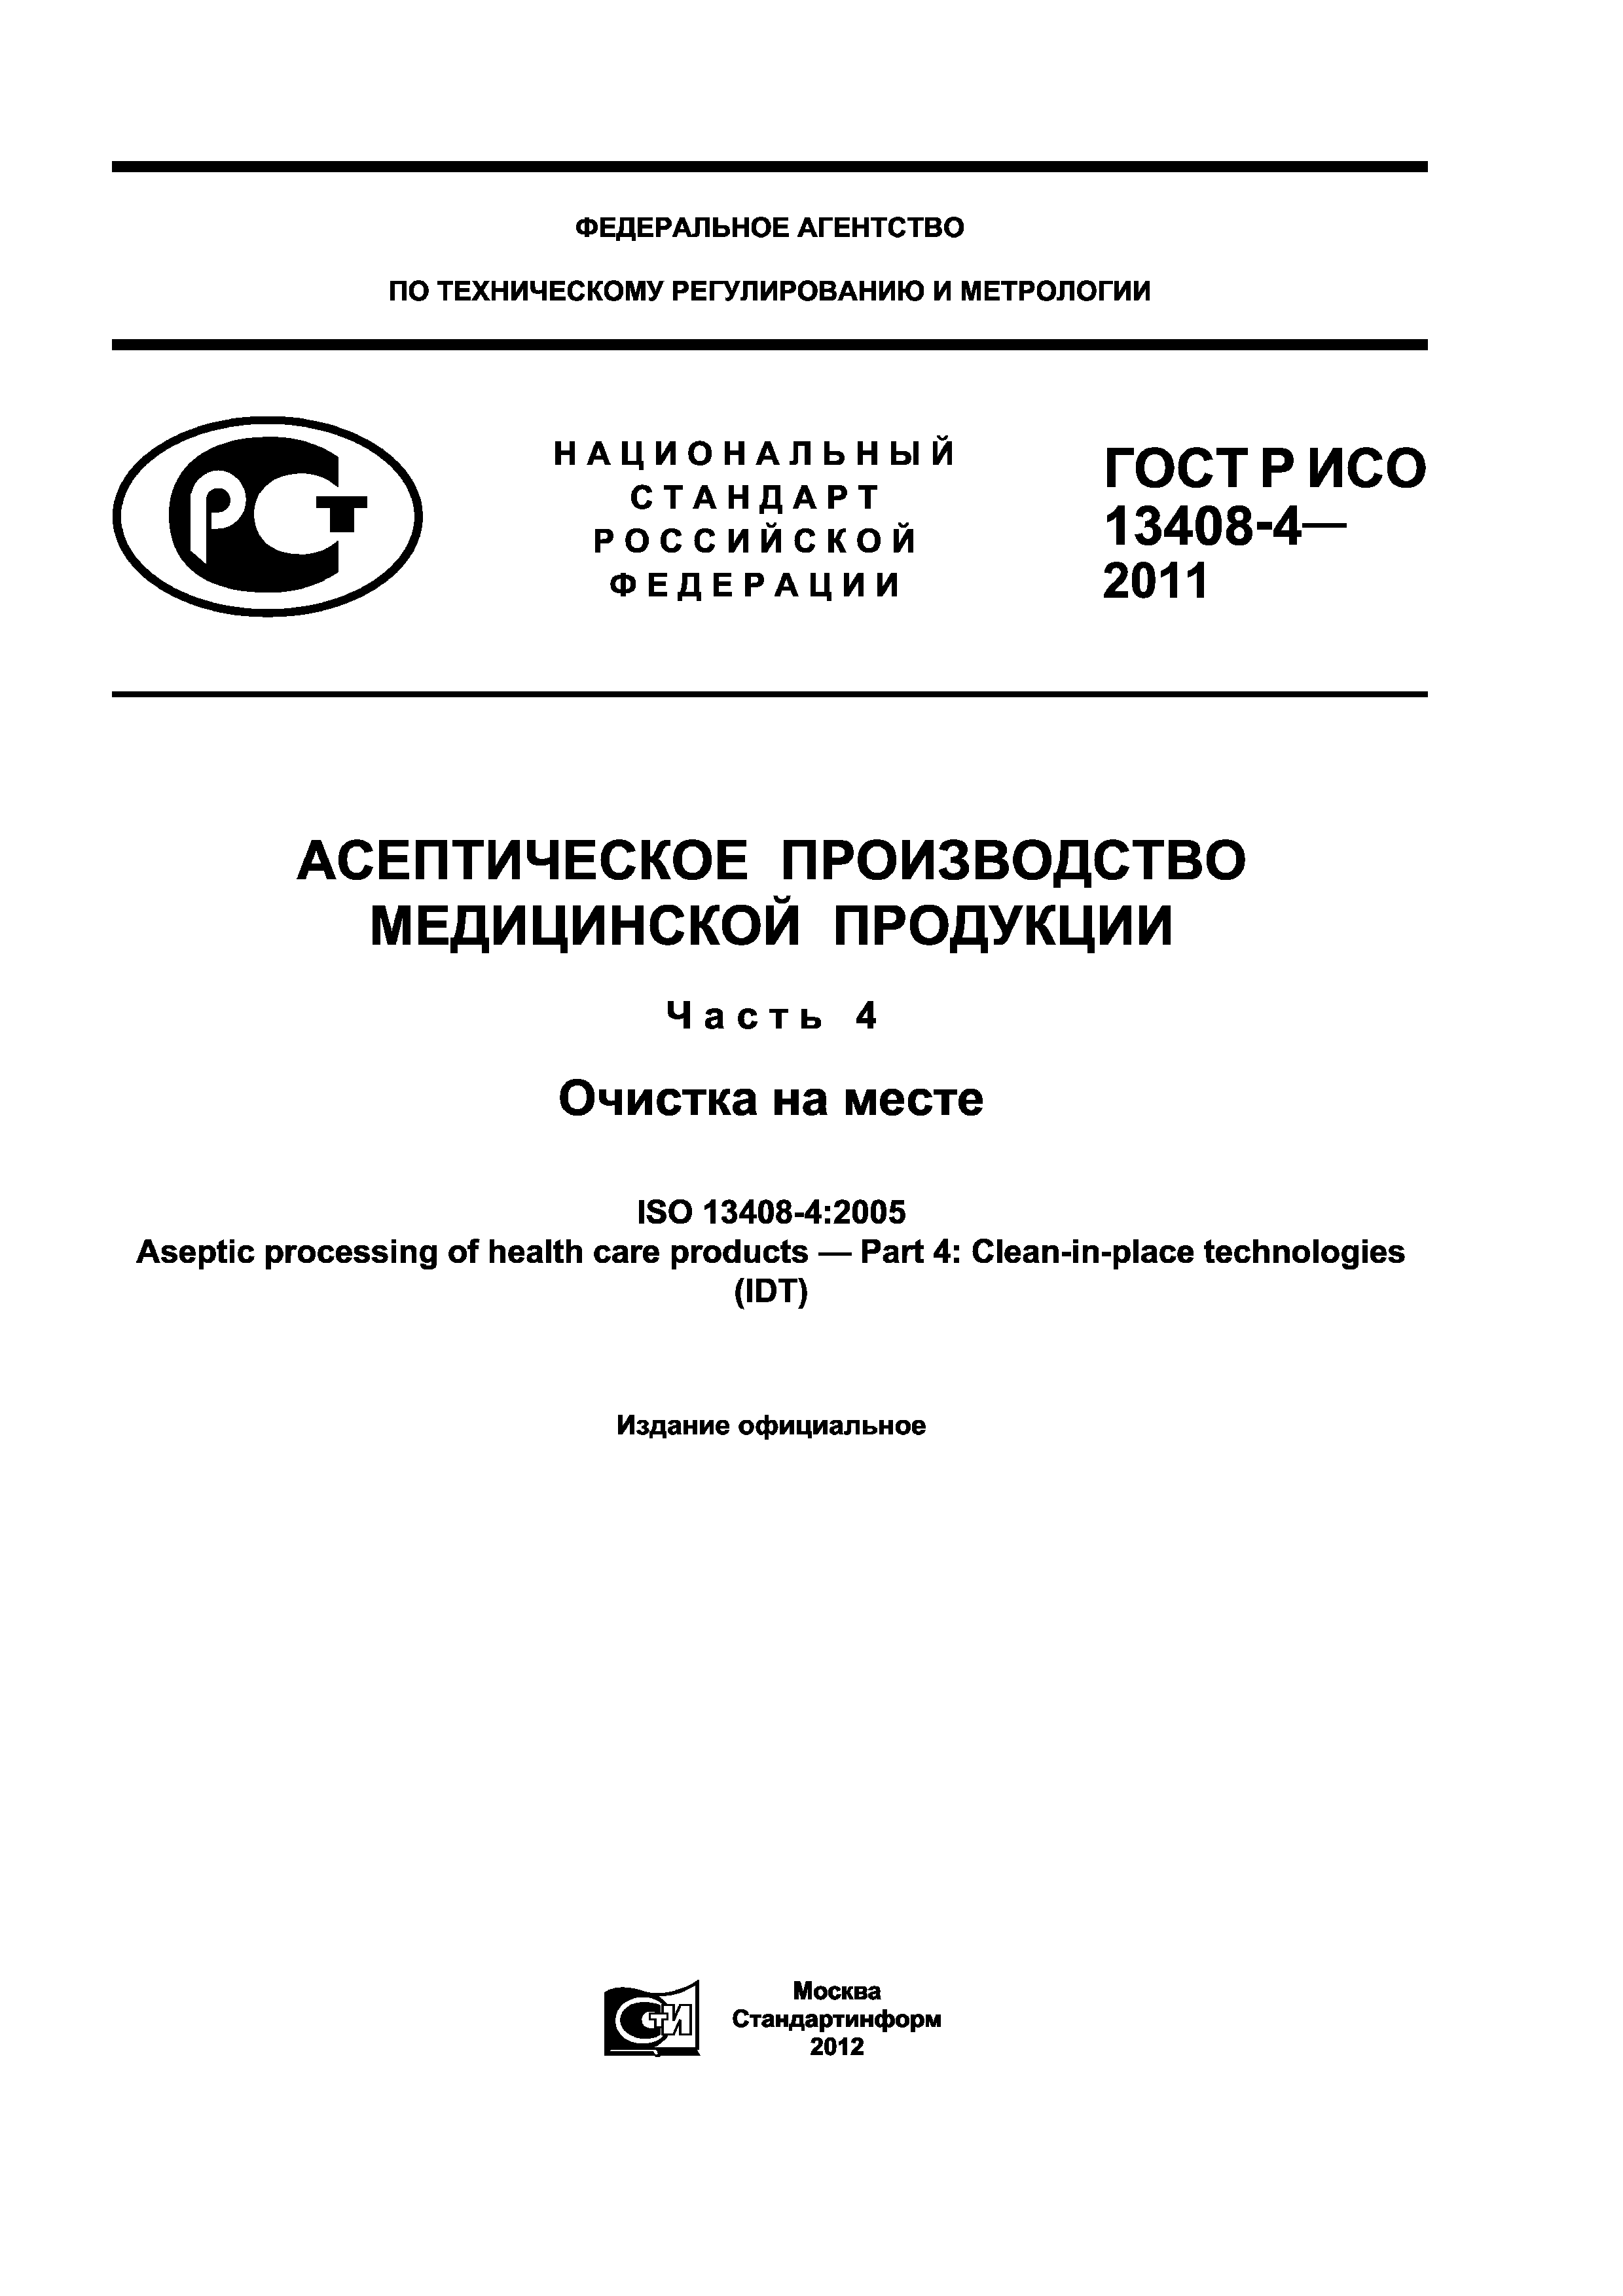 ГОСТ Р ИСО 13408-4-2011